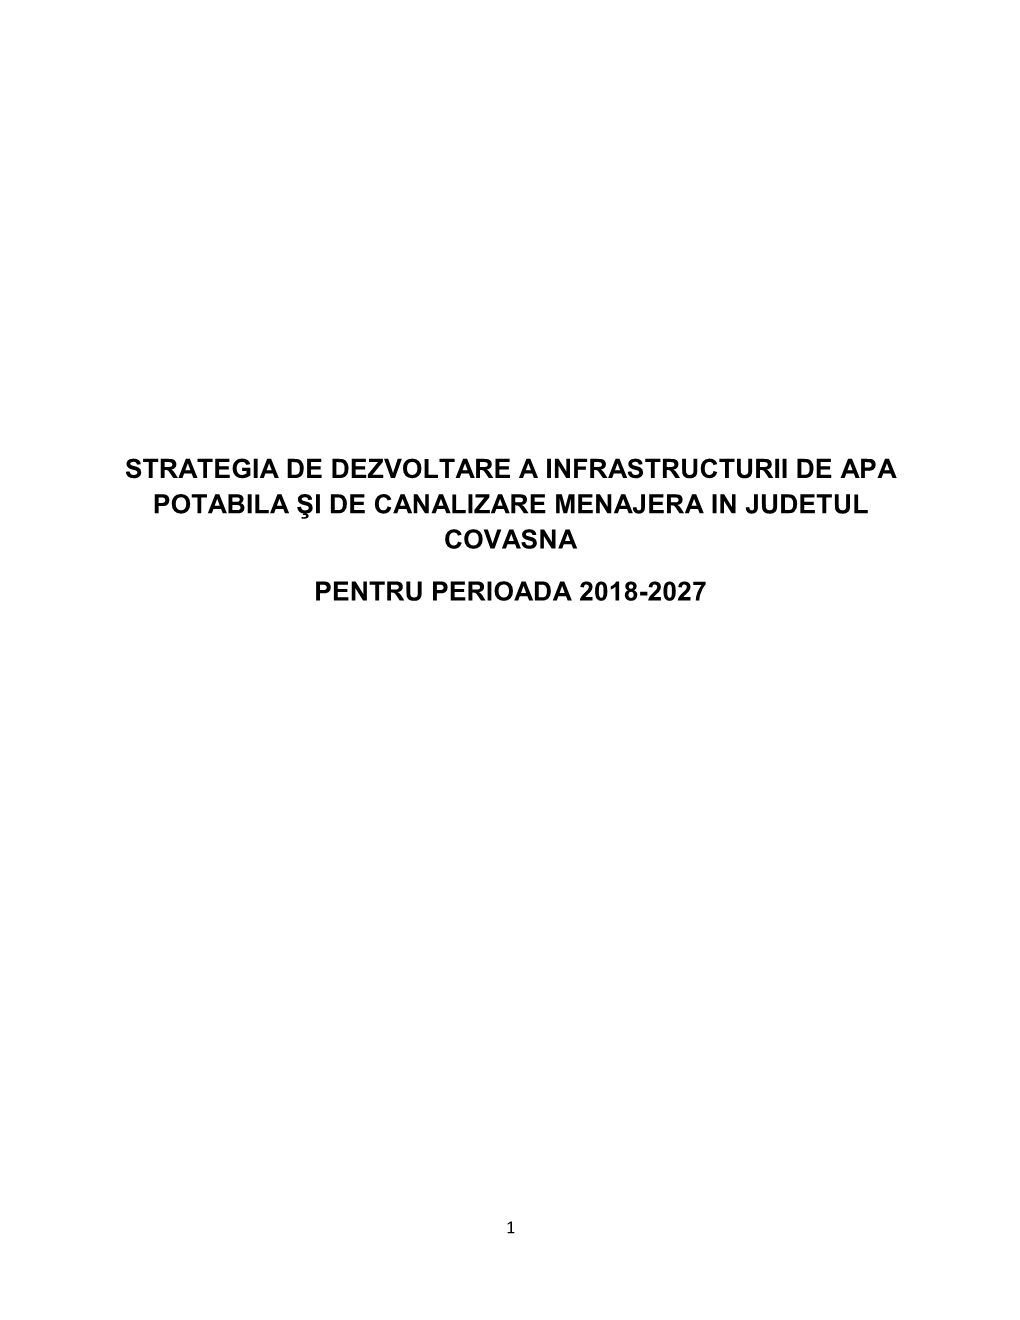 Strategia De Dezvoltare a Infrastructurii De Apa Potabila Şi De Canalizare Menajera in Judetul Covasna Pentru Perioada 2018-2027